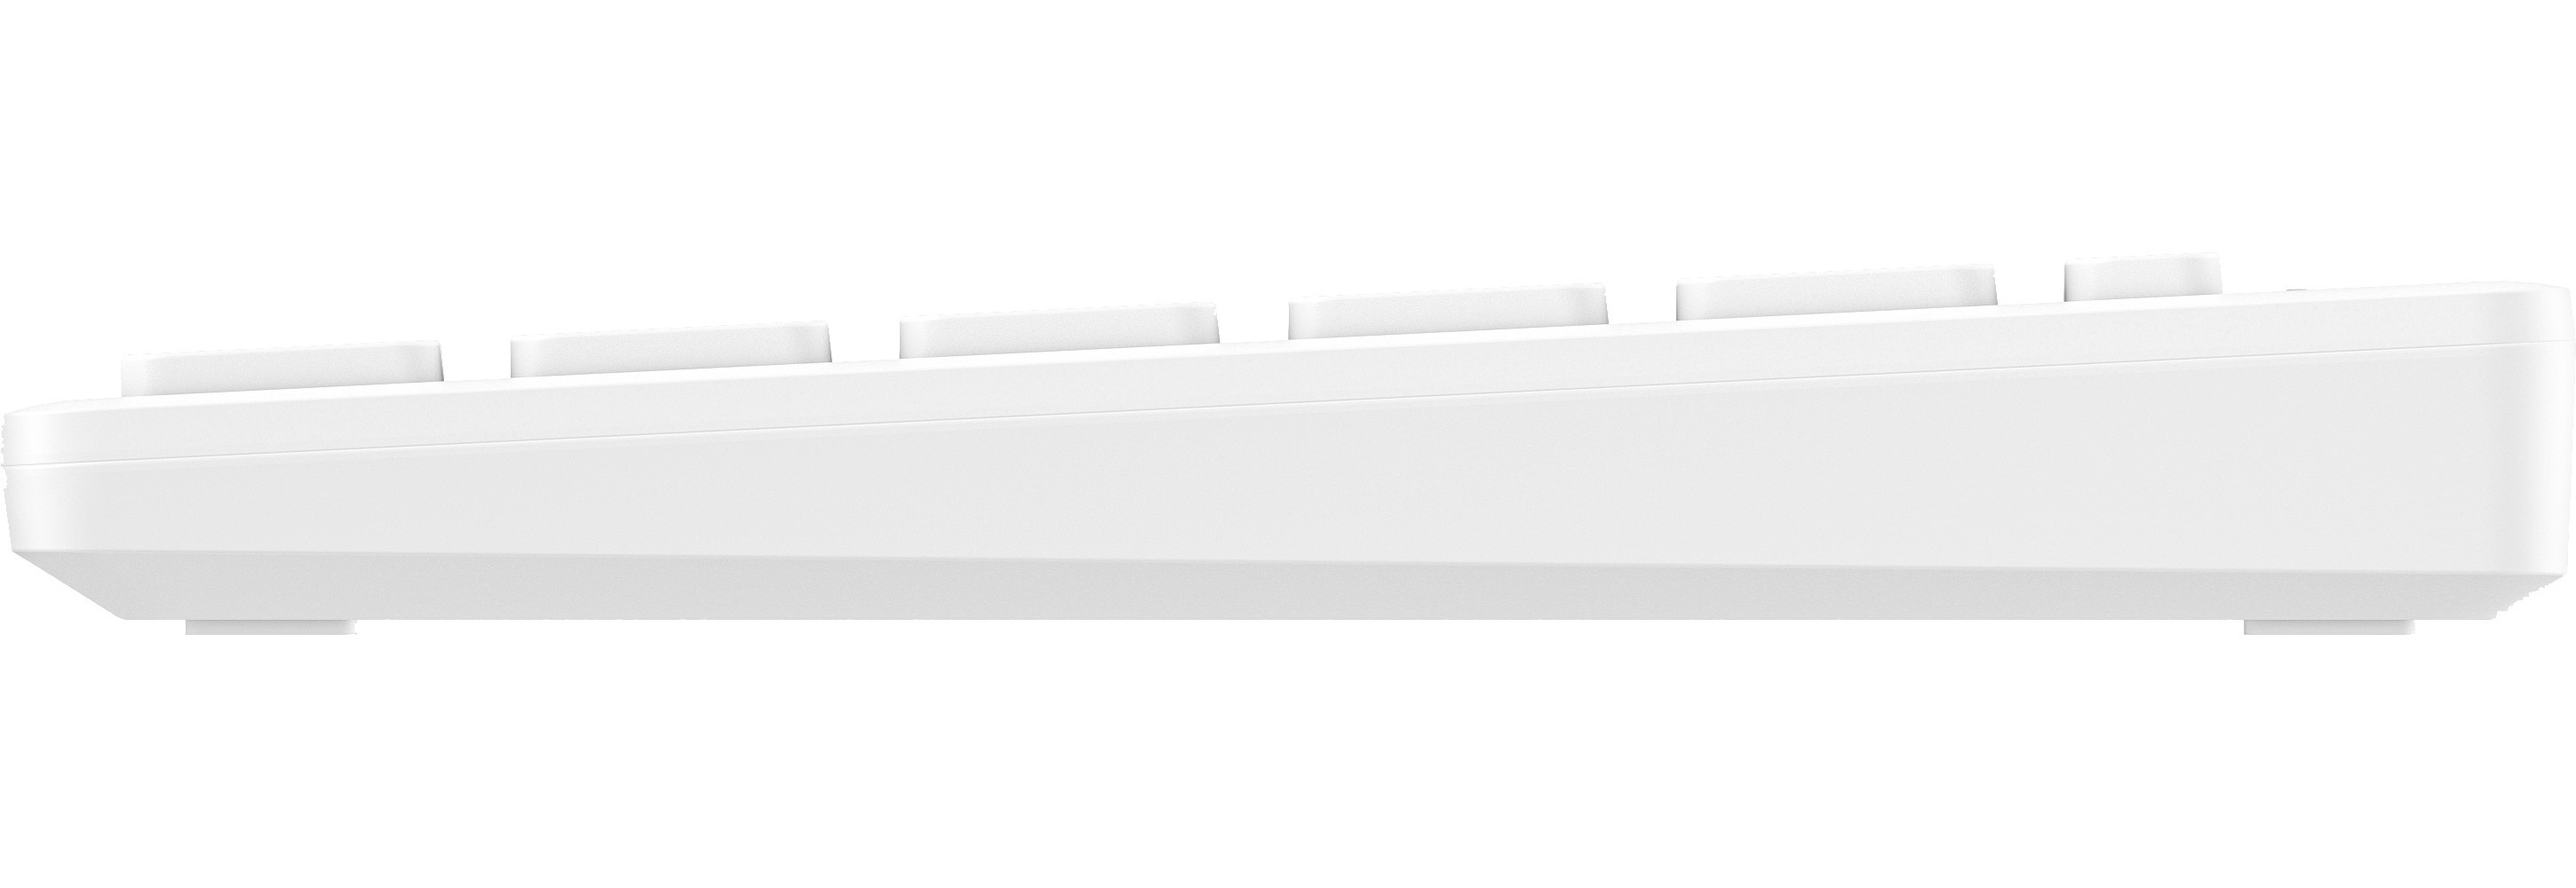 Купить Клавиатура HP 350 Multi-Device Compact Wireless Keyboard White (692T0AA)